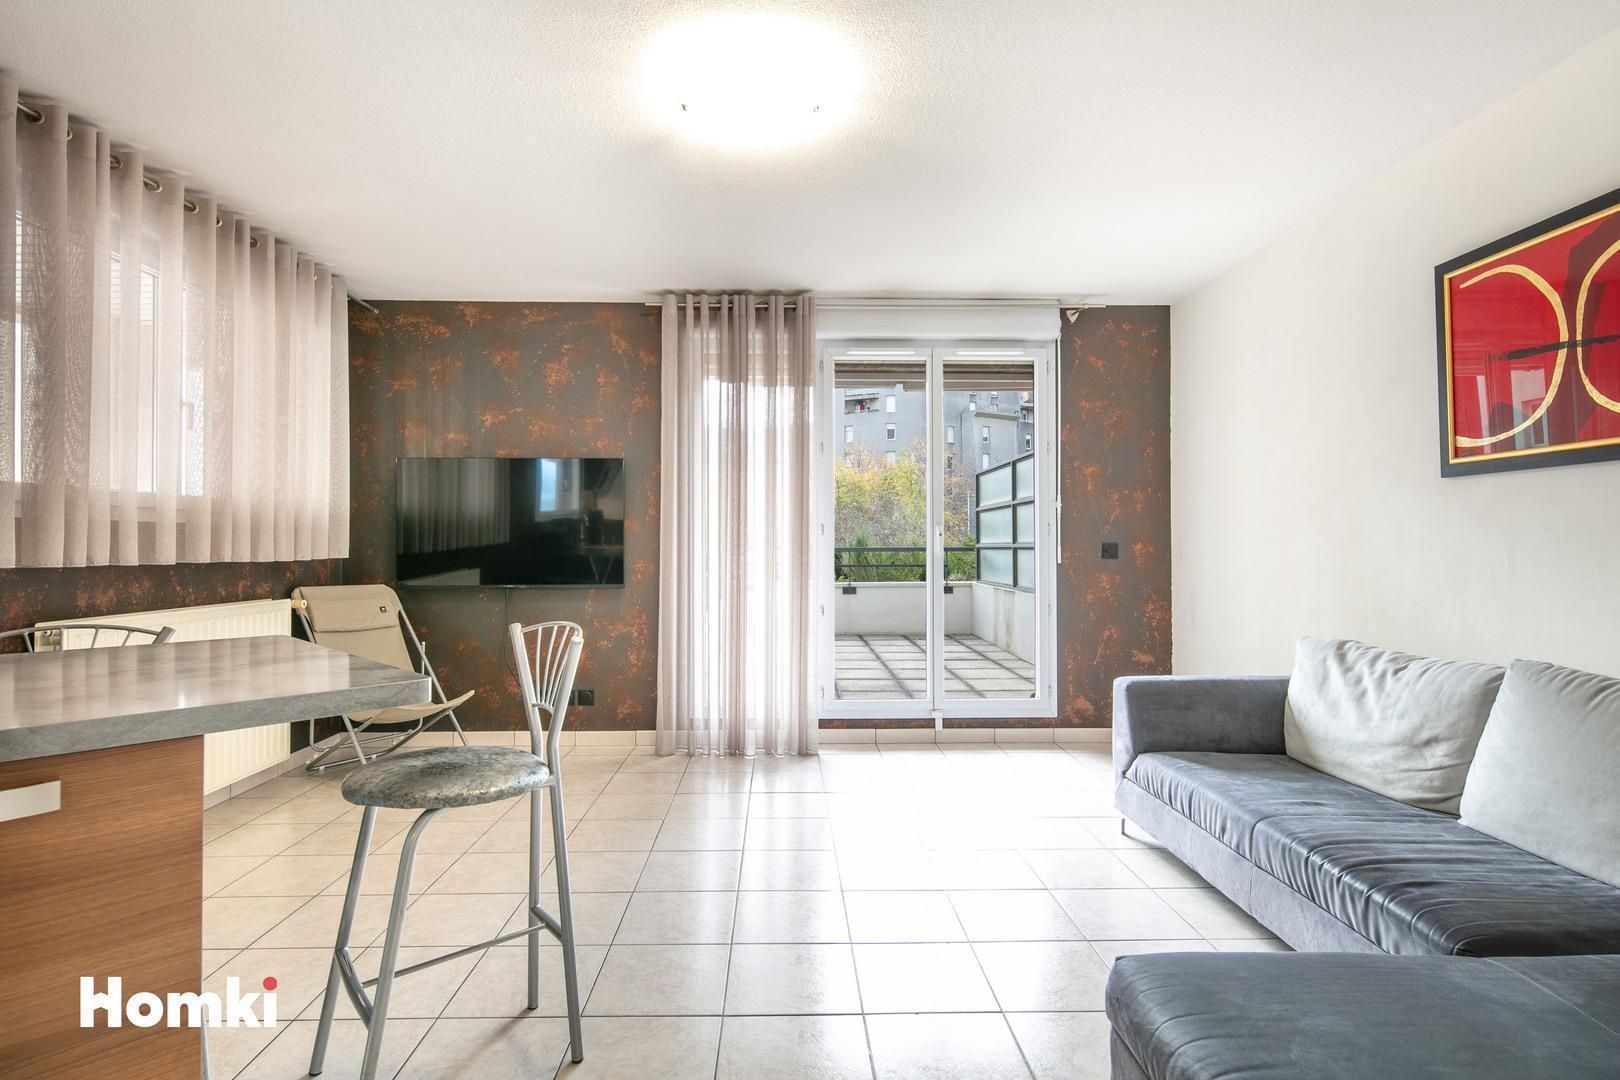 Homki - Vente Appartement  de 61.0 m² à Grenoble 38000